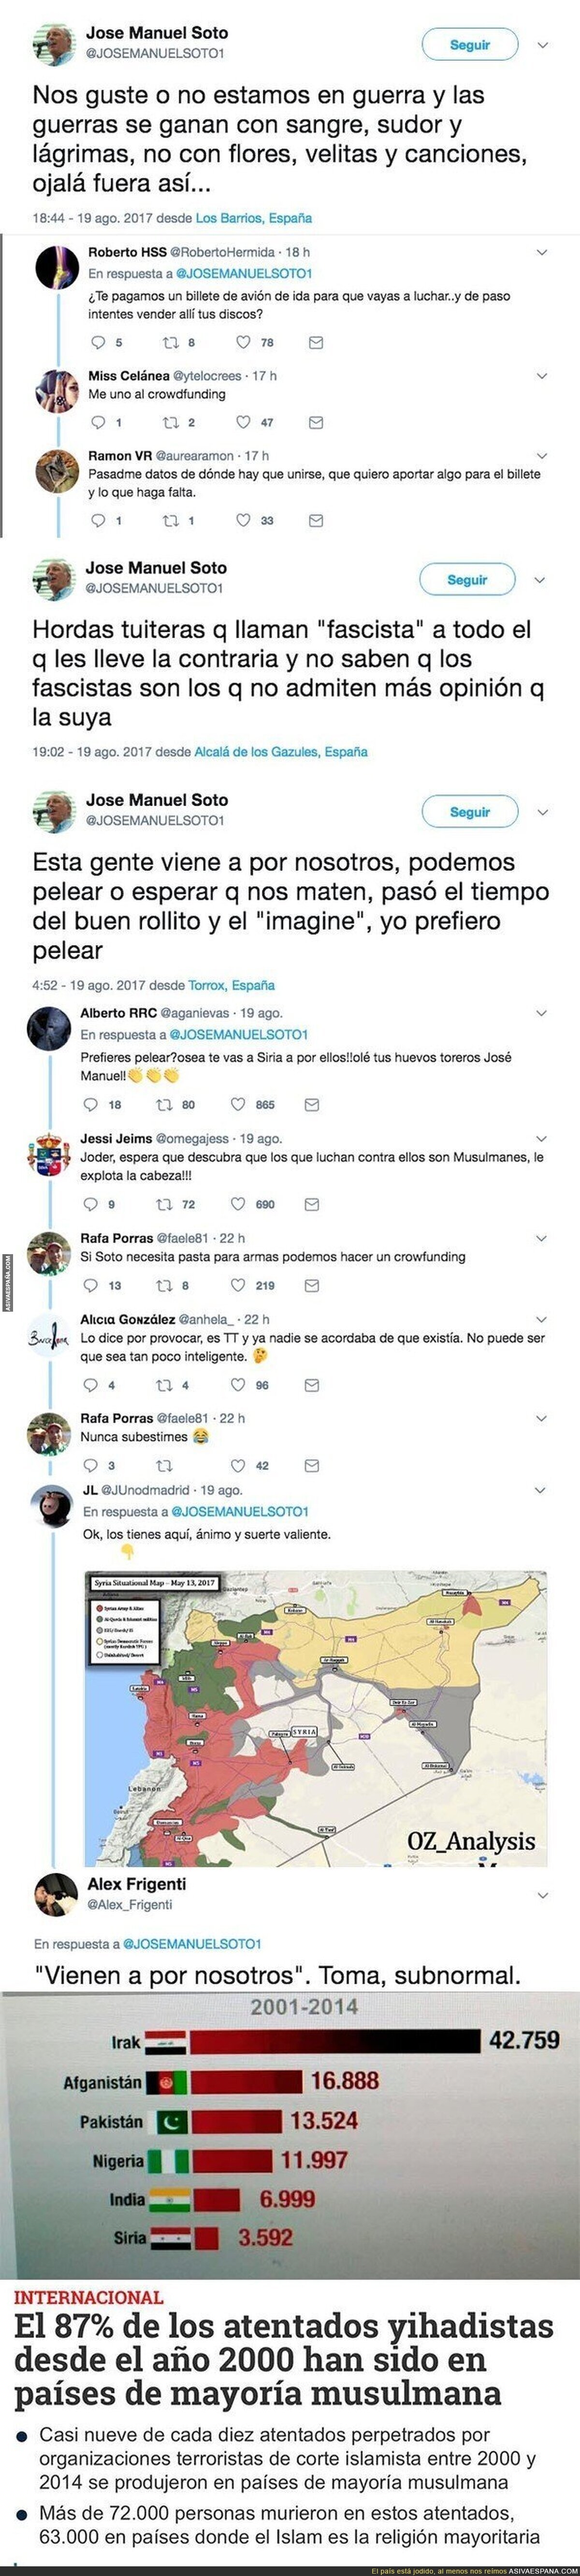 José Manuel Soto la vuelve a liar en Twitter tras el atentado en Barcelona